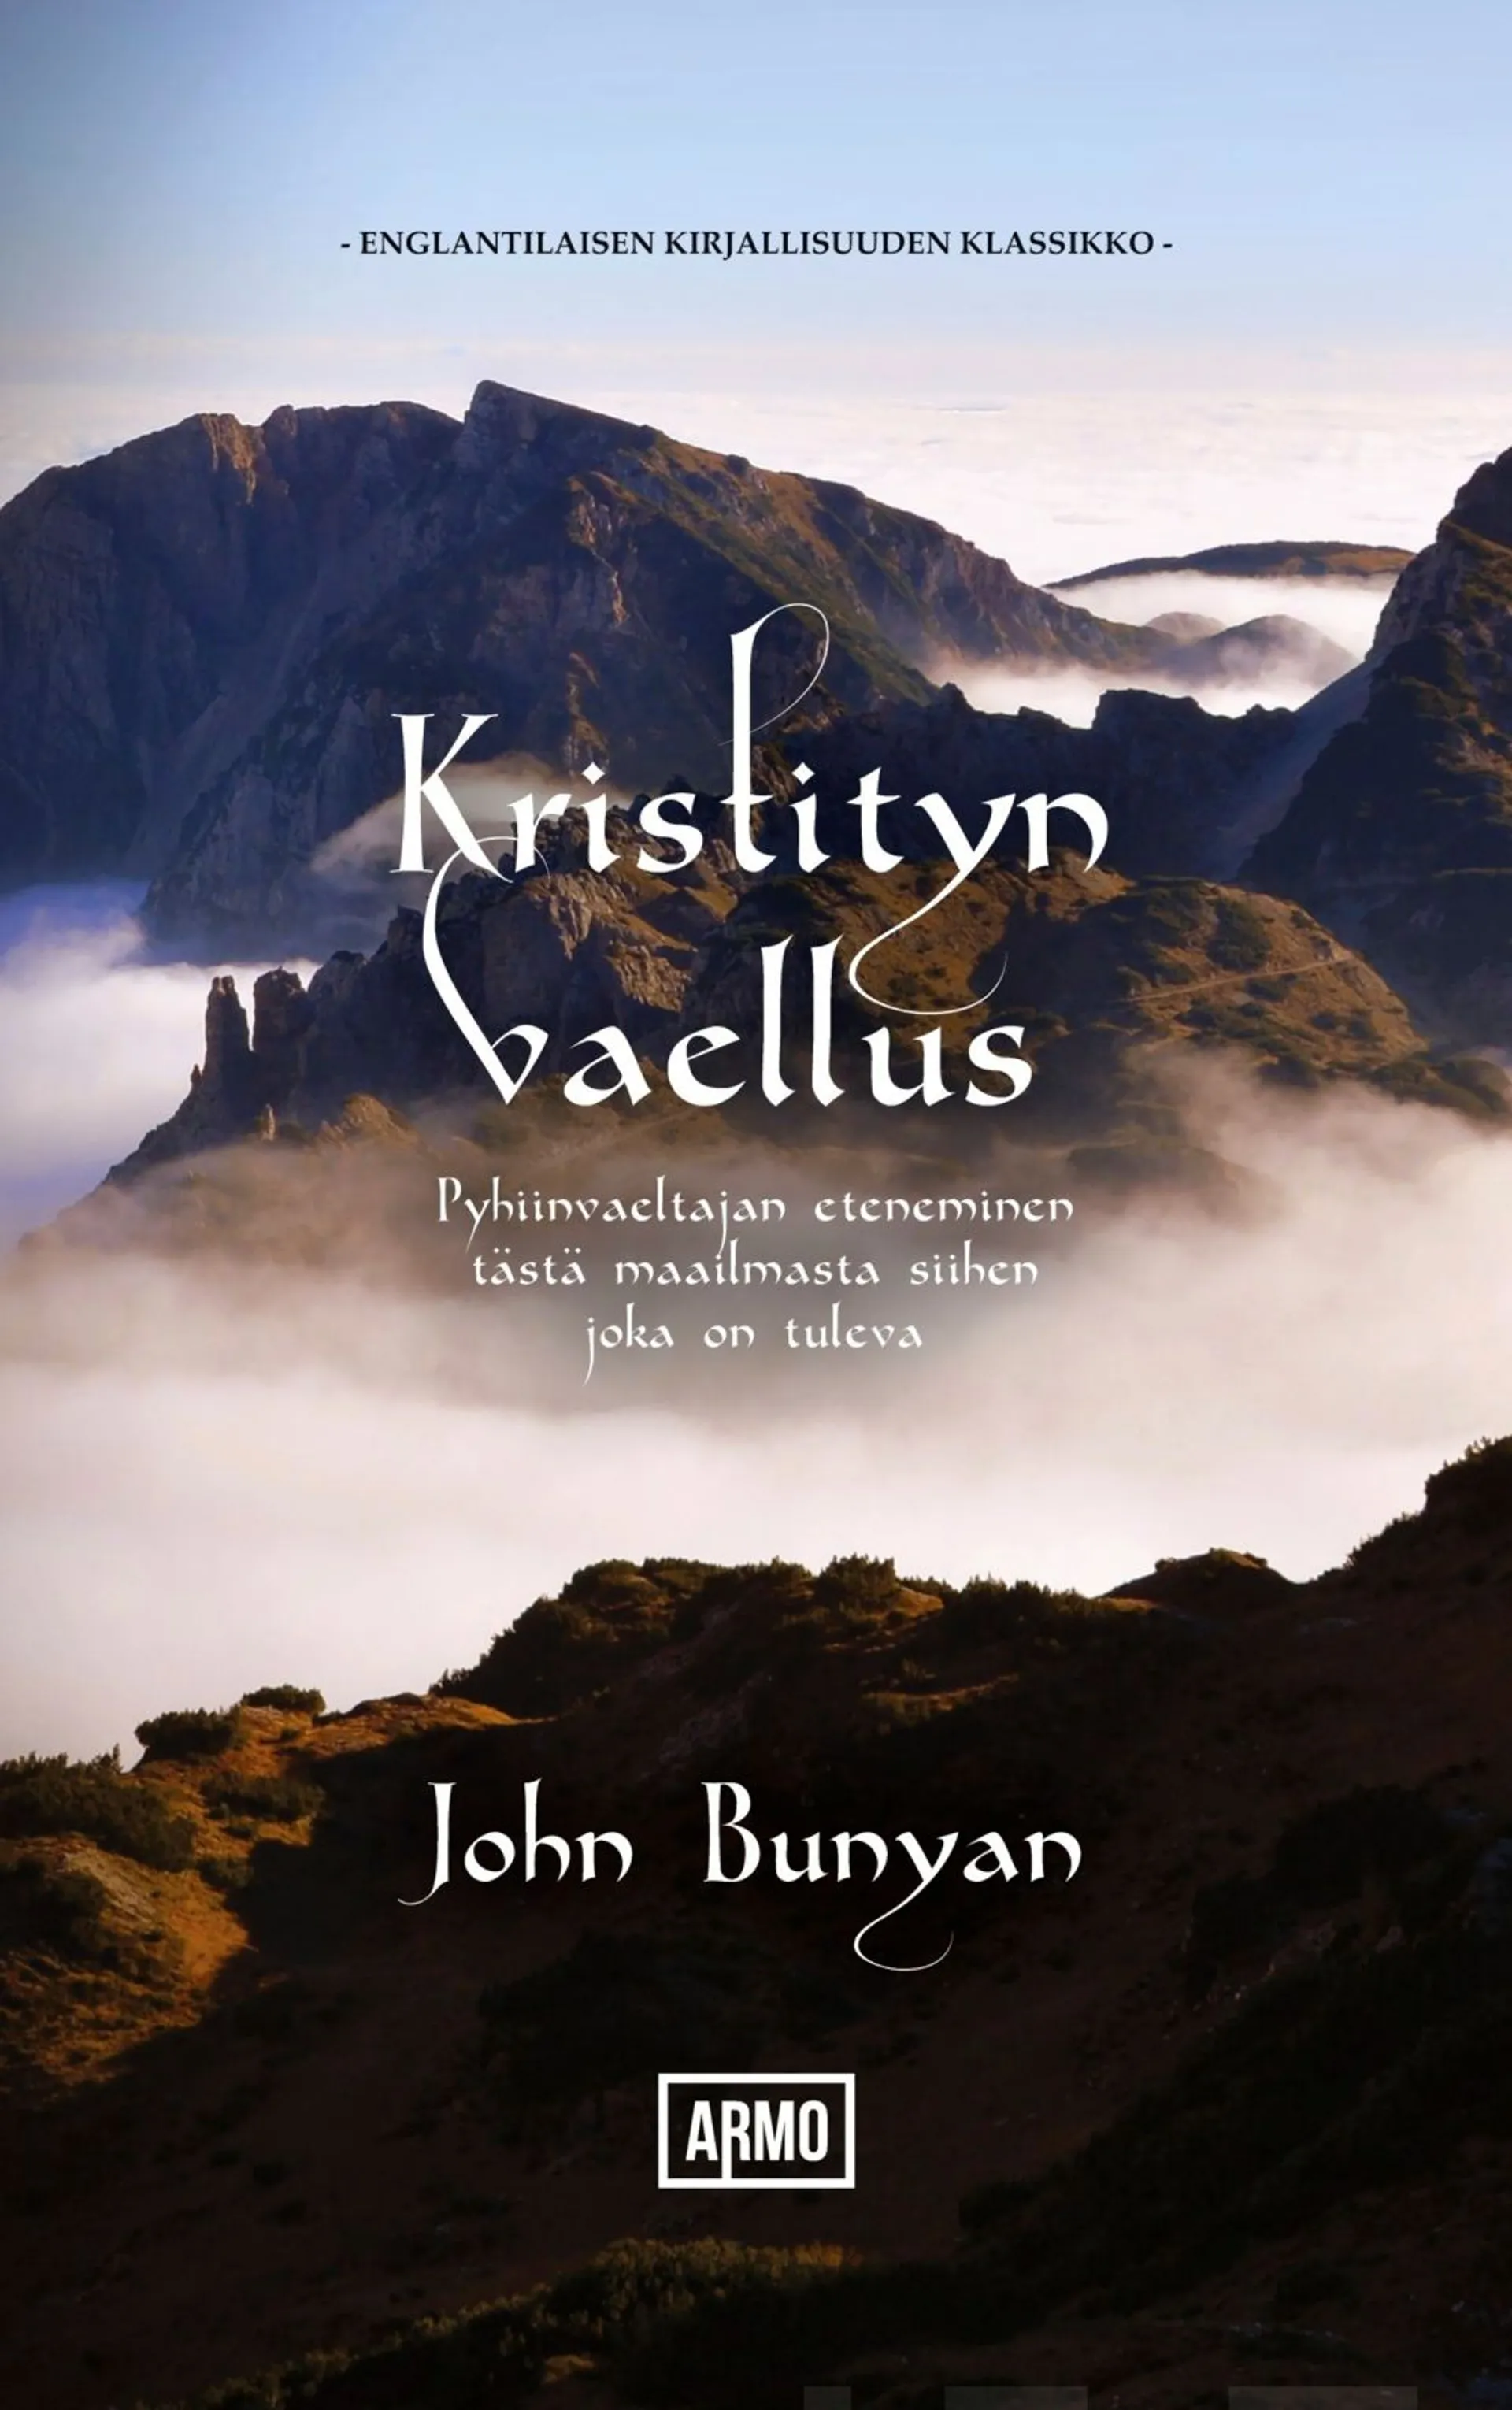 Bunyan, Kristityn vaellus - Pyhiinvaeltajan eteneminen tästä maailmasta siihen, joka on tuleva